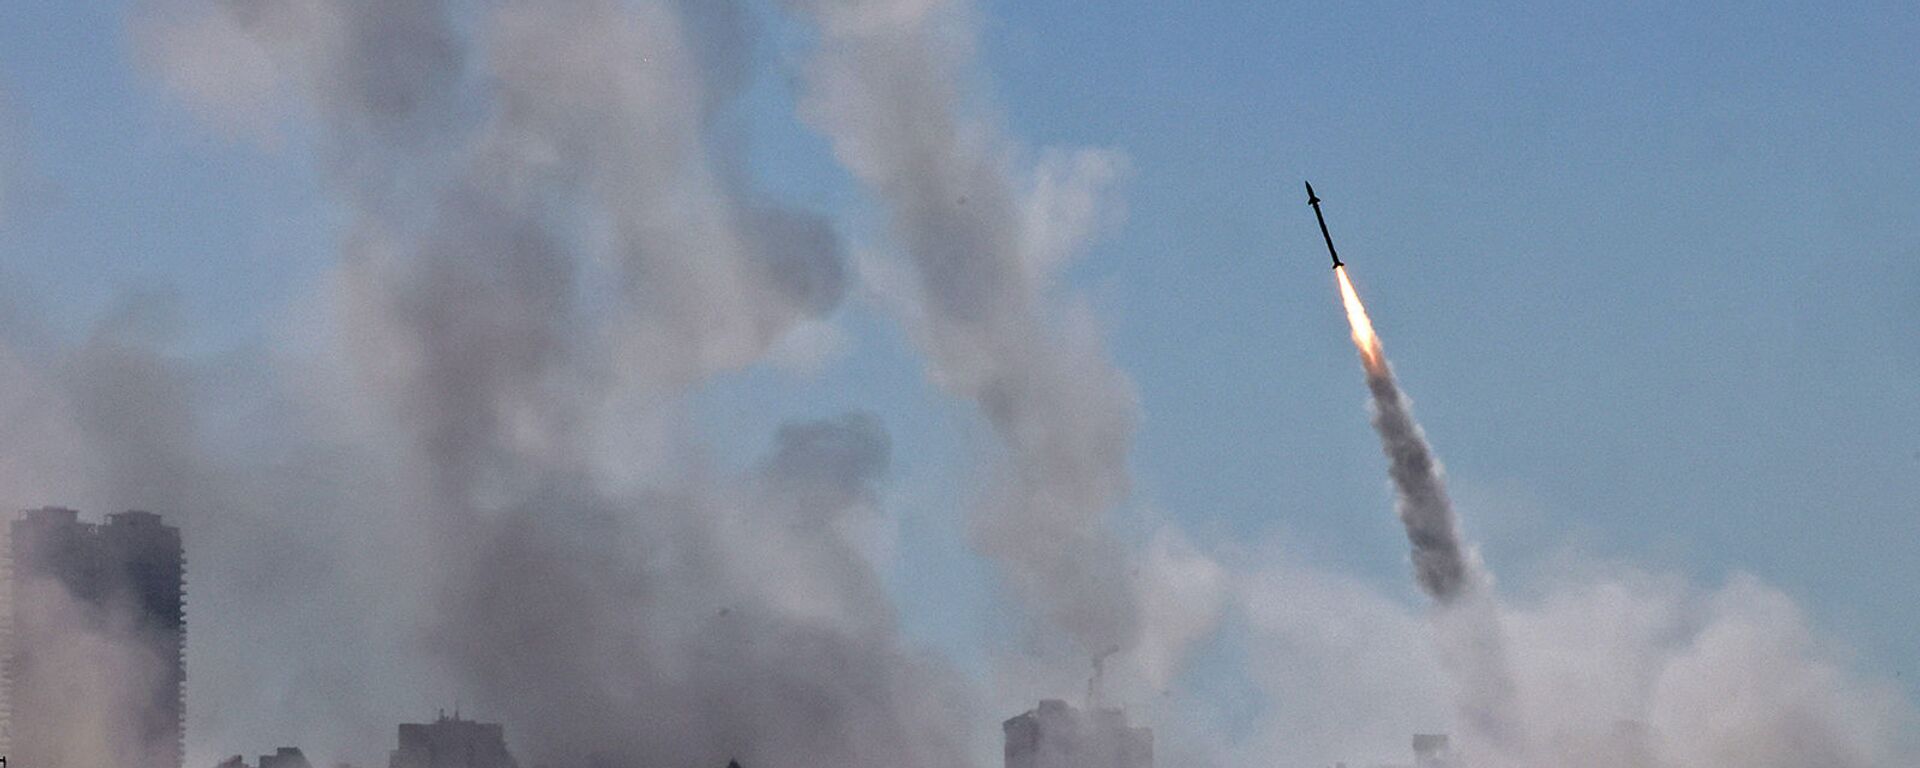 Система противовоздушной обороны Израиля Iron Dome активирована для перехвата ракеты, запущенной из сектора Газа, контролируемого палестинским движением ХАМАС (12 мая 2021). Ашдод - Sputnik Արմենիա, 1920, 10.06.2021